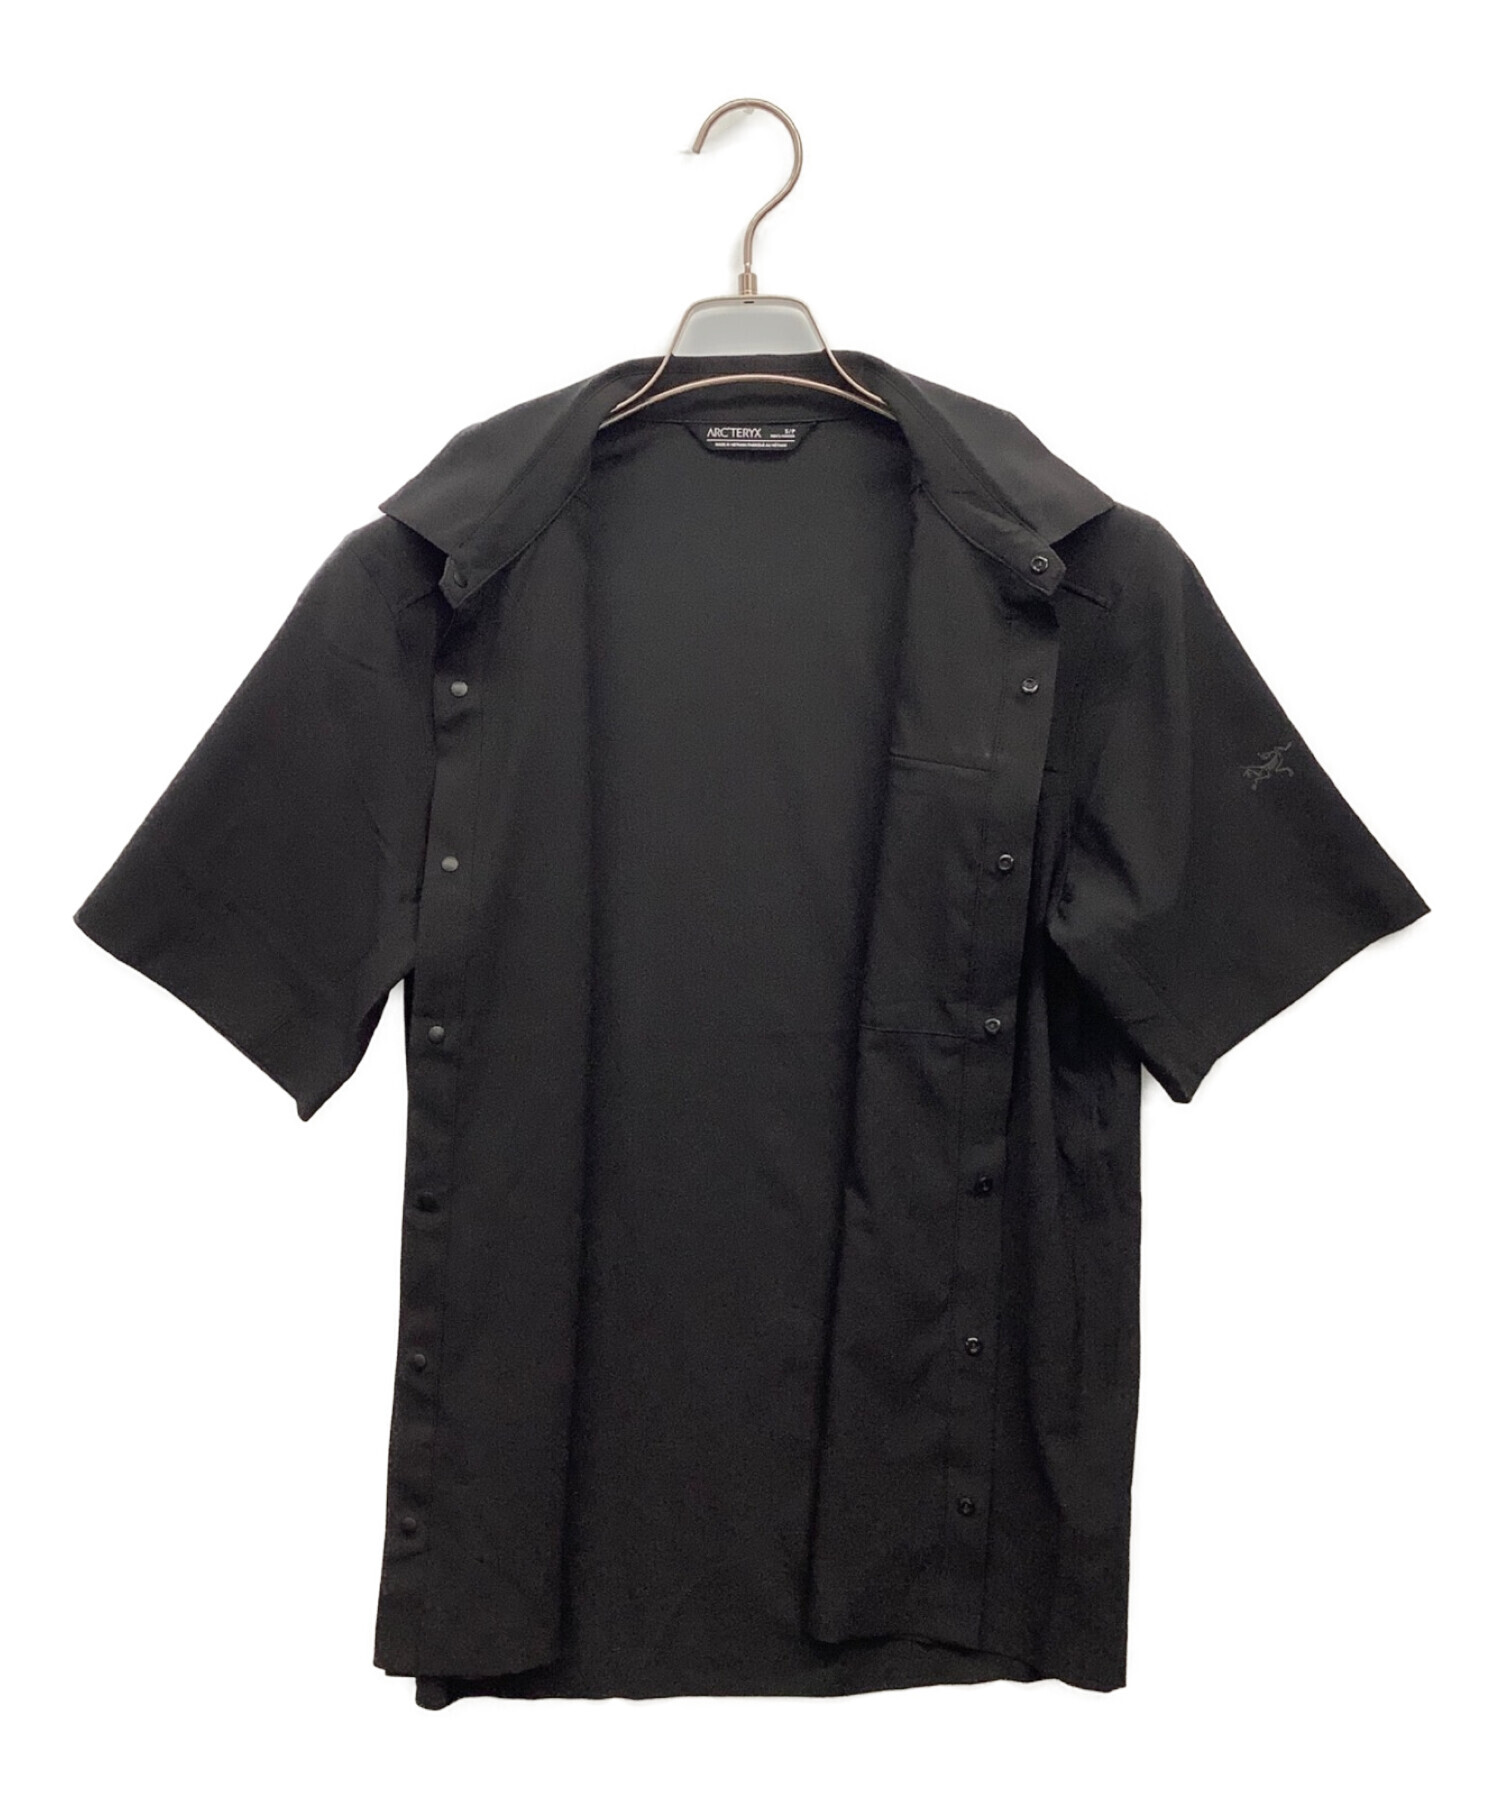 ARC'TERYX (アークテリクス) 半袖シャツ ブラック サイズ:S